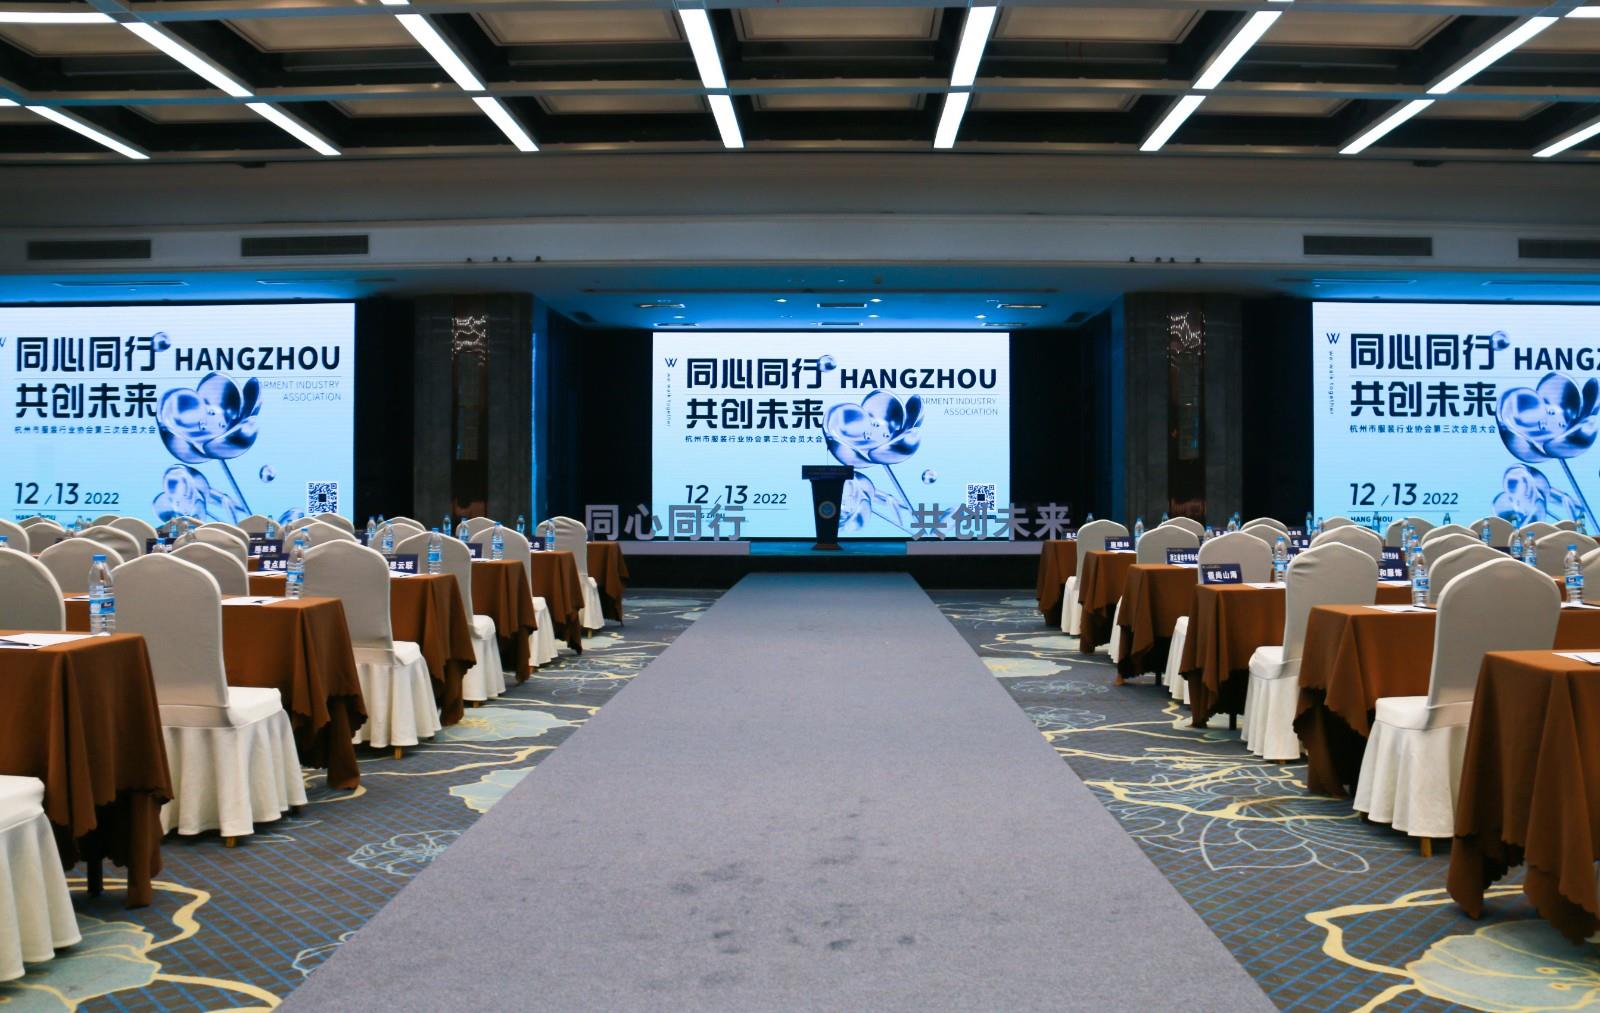 杭州市服装行业协会第七届第三次会员大会于2022年12月13日在杭州瑞莱克斯大酒店召开。